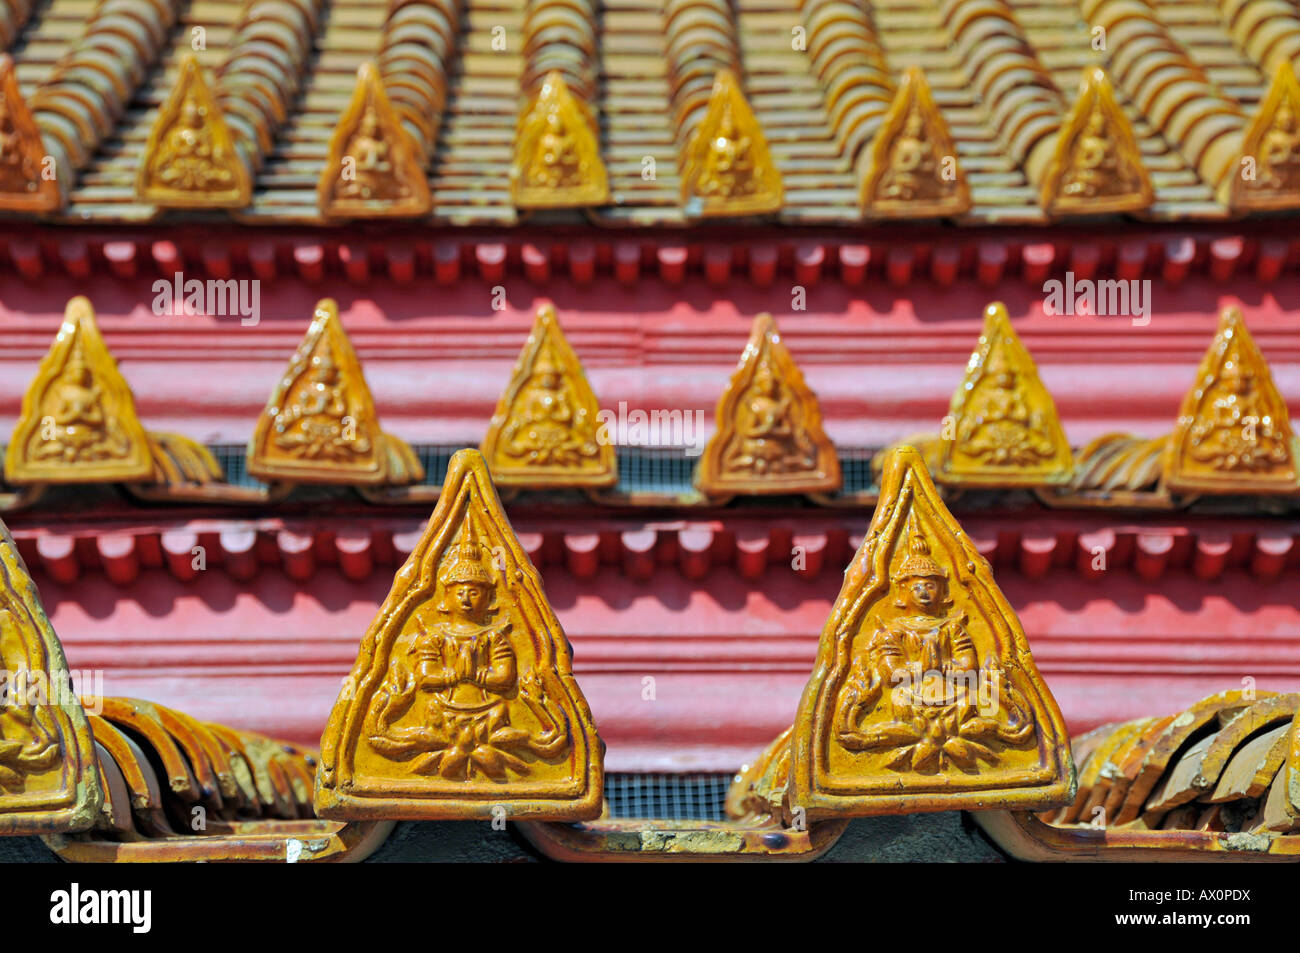 Tetto ornato, Tempio in marmo (Wat Benchamabophit), Bangkok, Thailandia, Asia Foto Stock